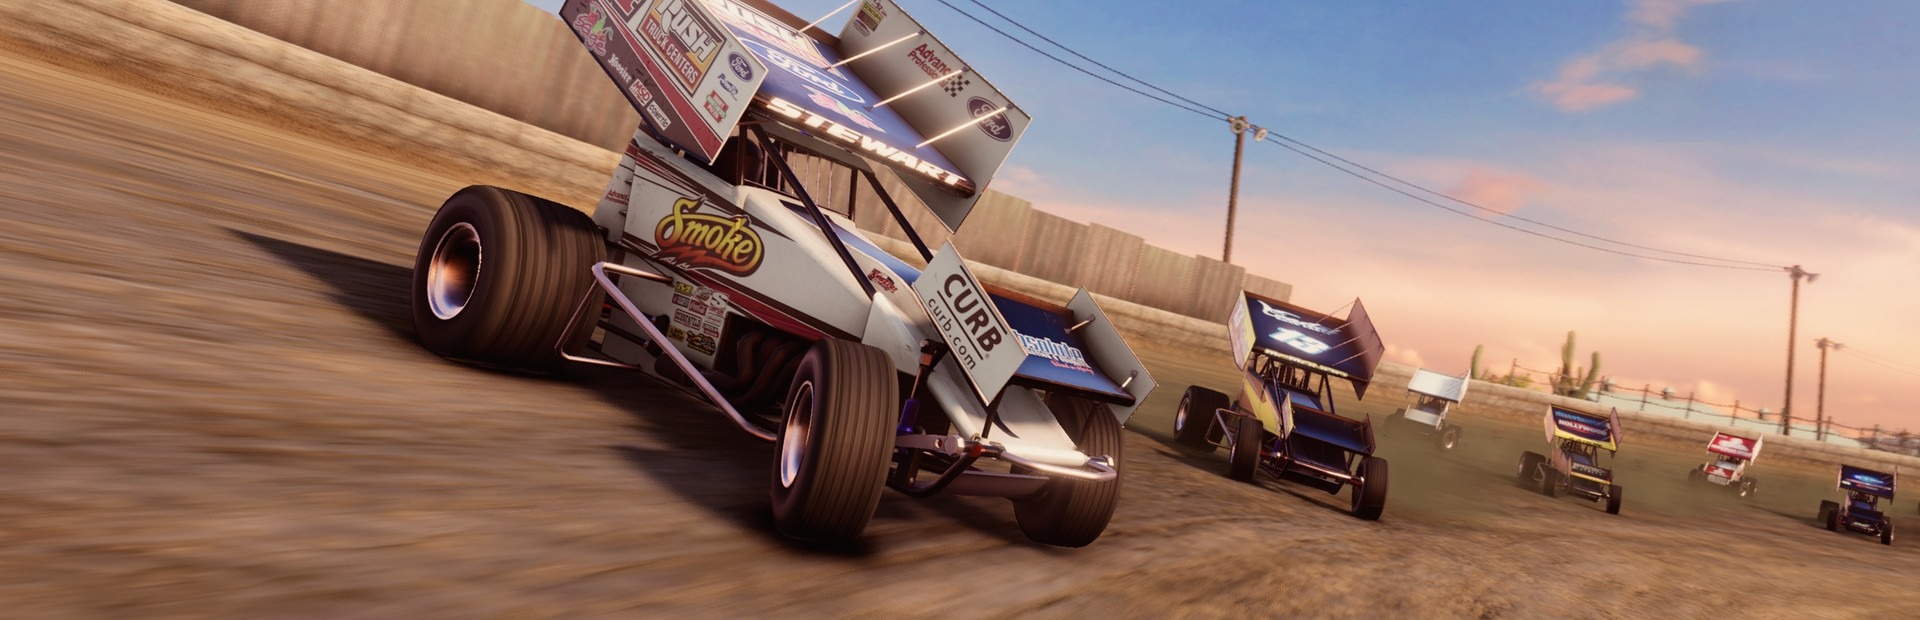 Tony Stewart's Sprint Car Racing (Xbox ONE / Xbox Series X|S)